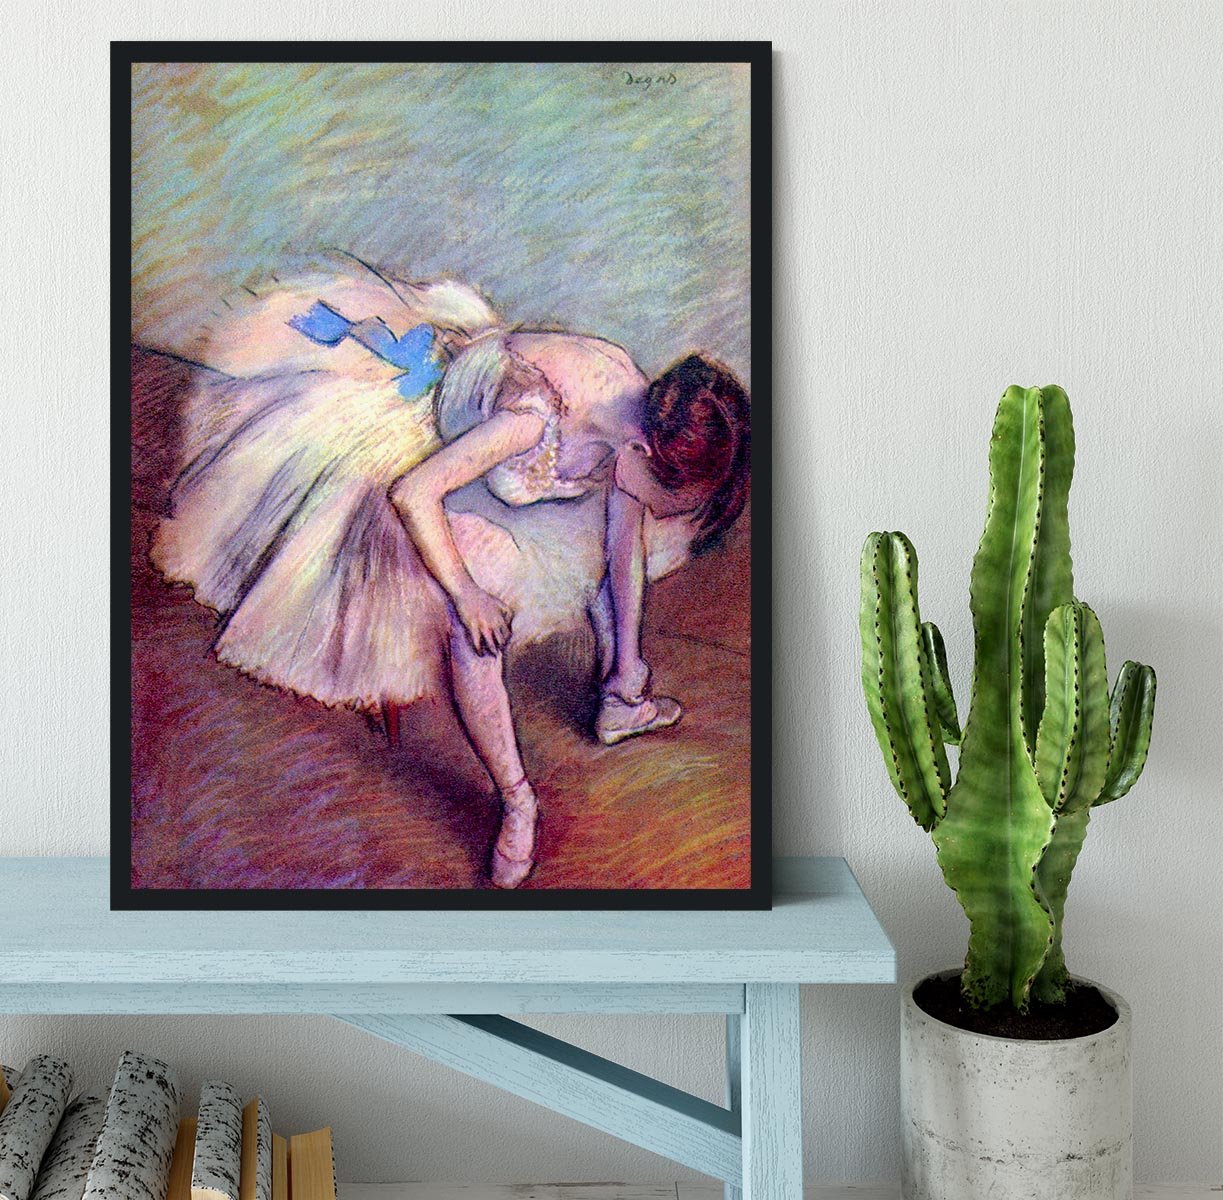 Dancer 2 by Degas Framed Print - Canvas Art Rocks - 2